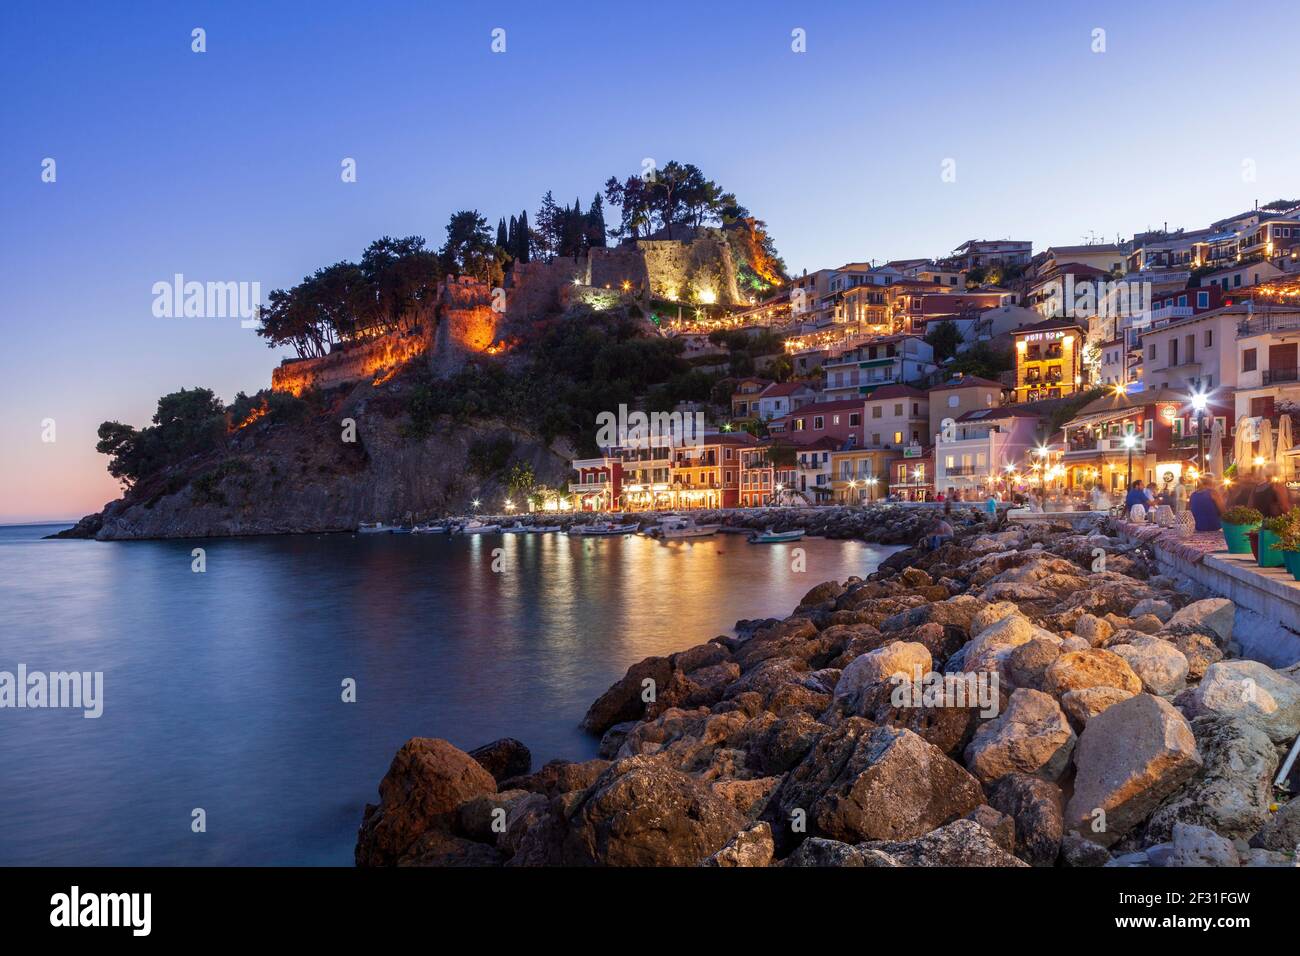 Ville de Parga, vue côtière à l'heure bleue (après le coucher du soleil), dans la préfecture de Preveza, région d'Epirus, Grèce, Europe Banque D'Images